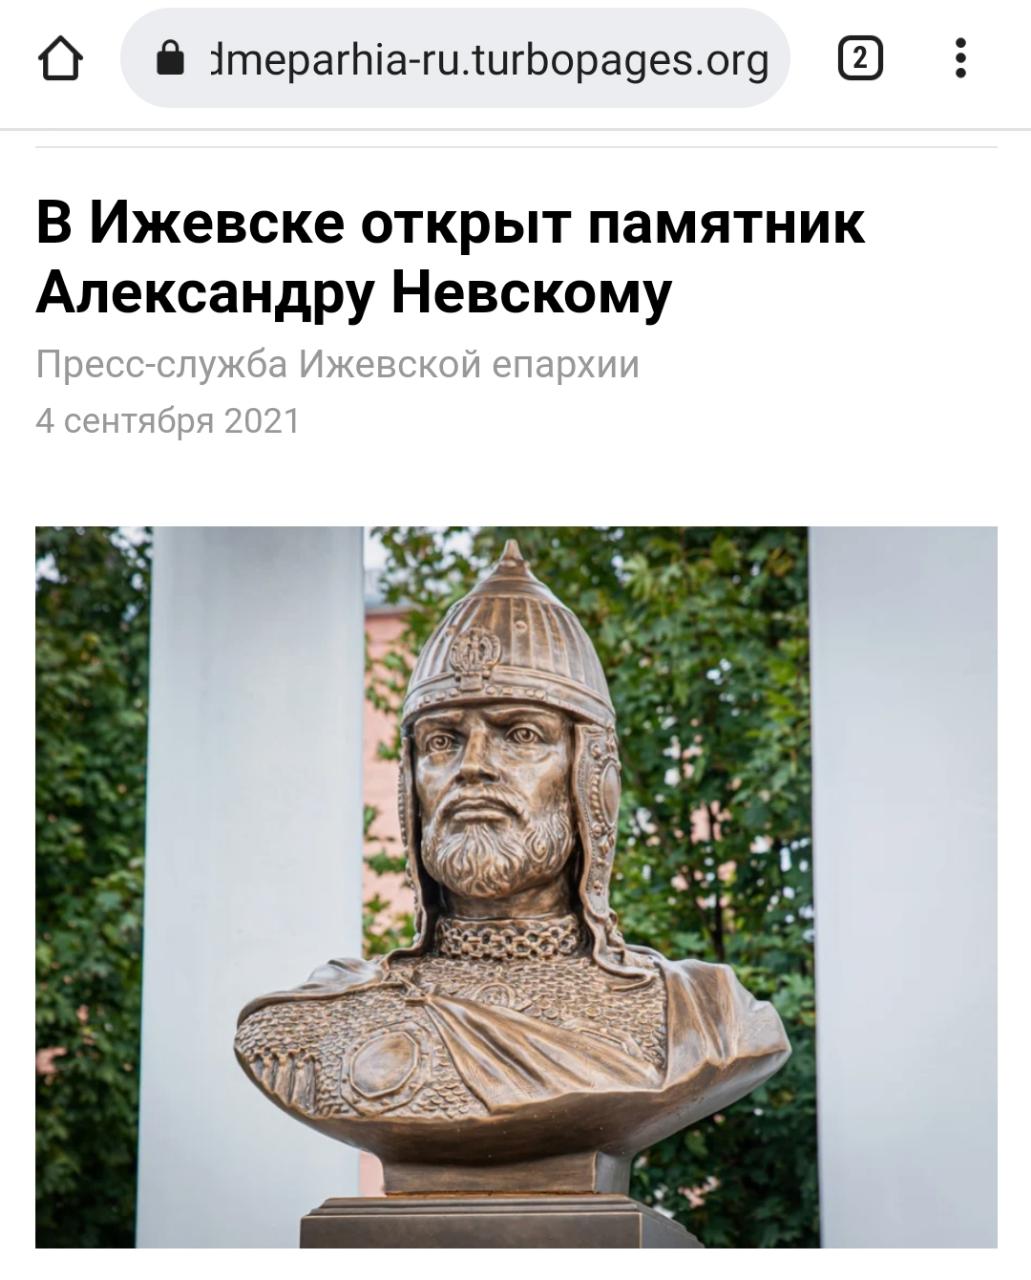 Дежавю: сегодня бюст Александру Невскому в Краснодаре откроют снова?